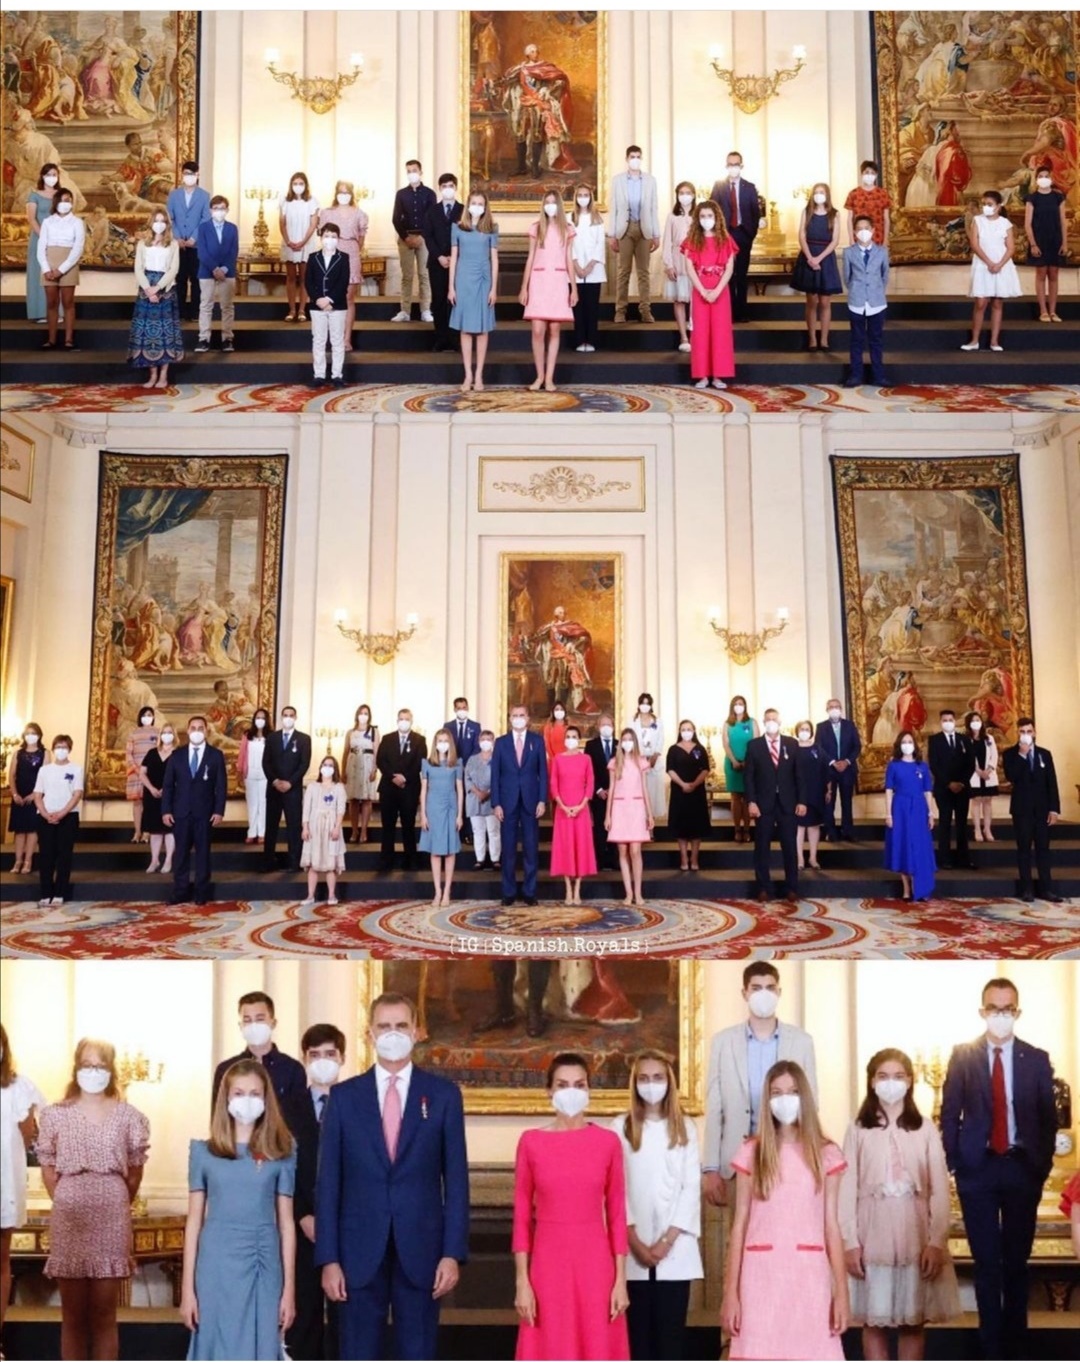 حفل خاص بمناسبة تولي الملك فيليب الحكم في القصر الملكي في مدريد- الصورة من حساب Spanish royals على إنستغرام.jpg